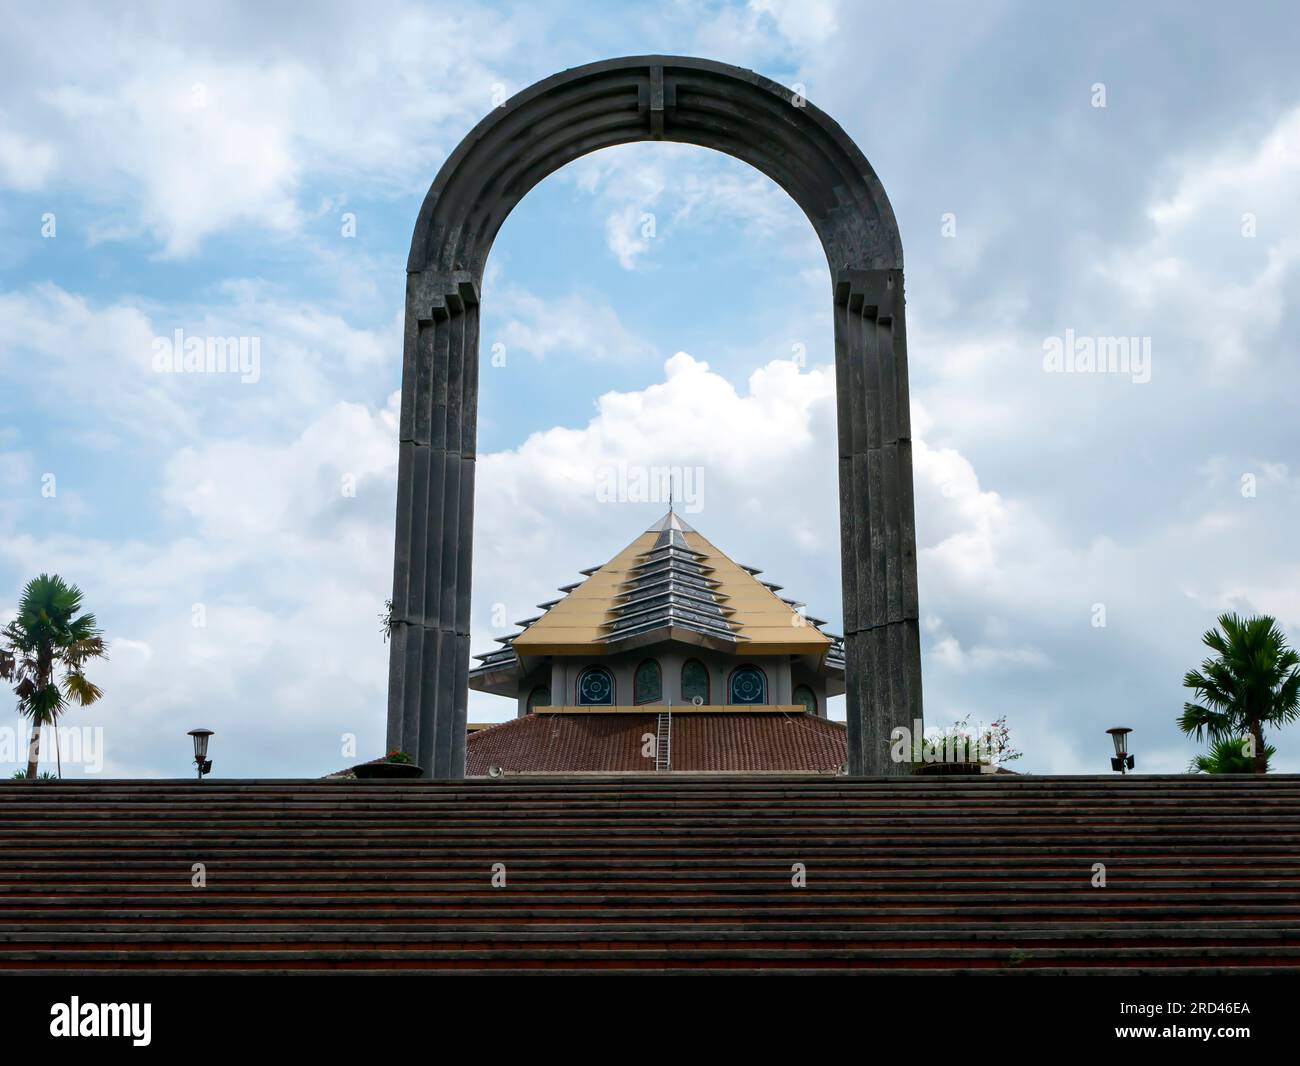 La porte principale de Masjid Kampus UGM, une mosquée dans le complexe universitaire de Gadjah Mada à Yogyakarta, Indonésie Banque D'Images